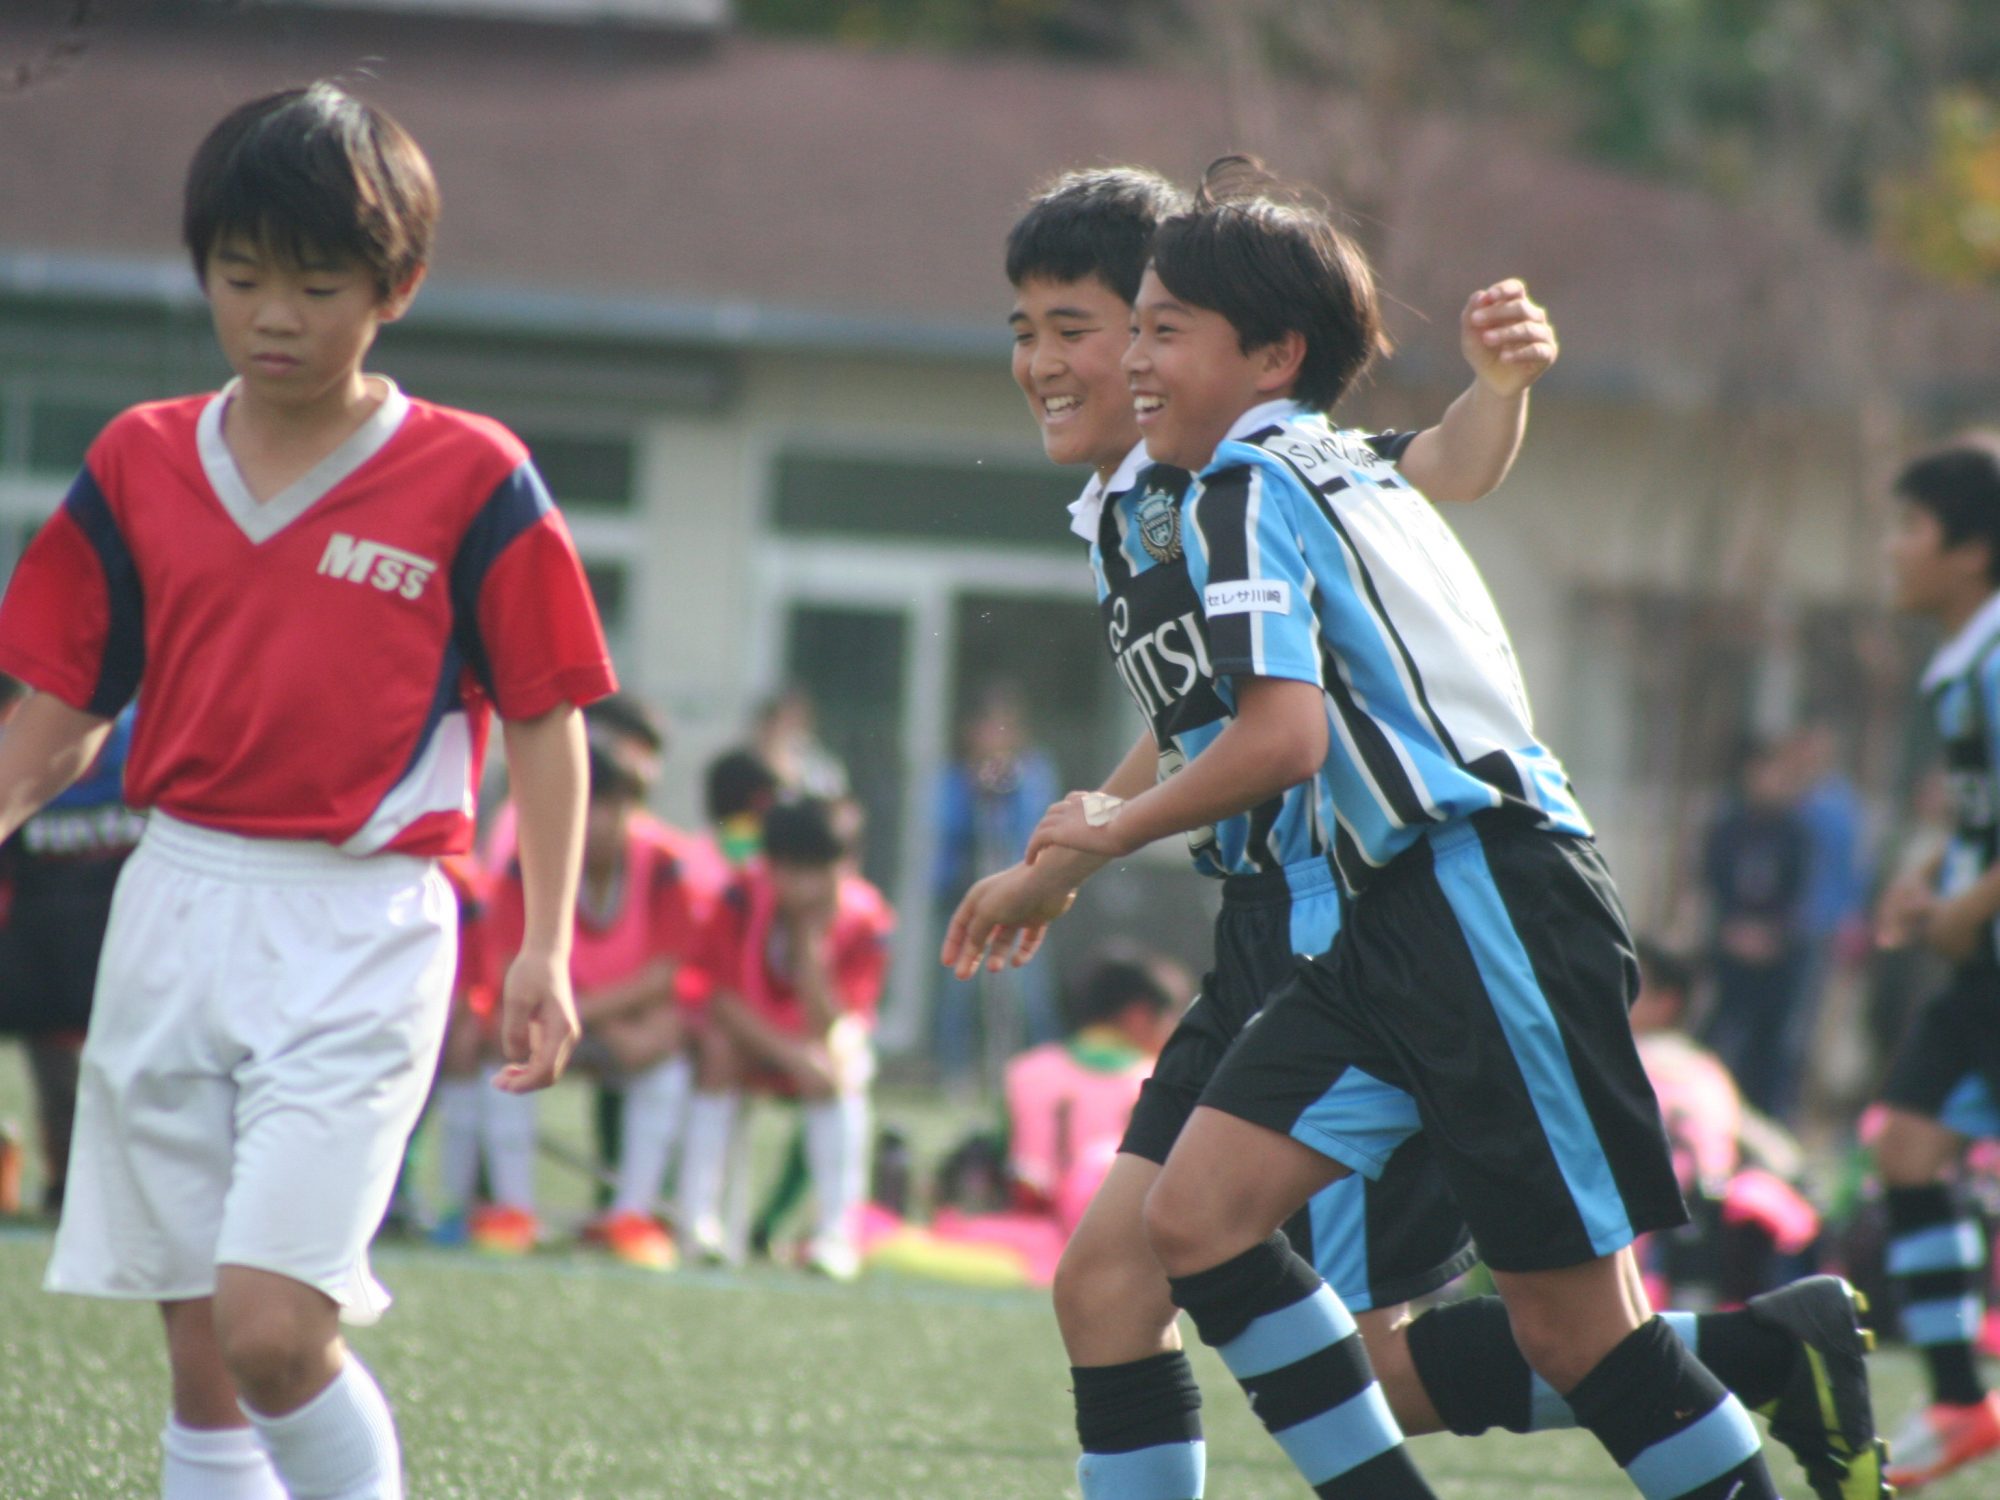 フロンターレu12 六浦毎日 全日本少年サッカー大会県大会4回戦 川崎そだち